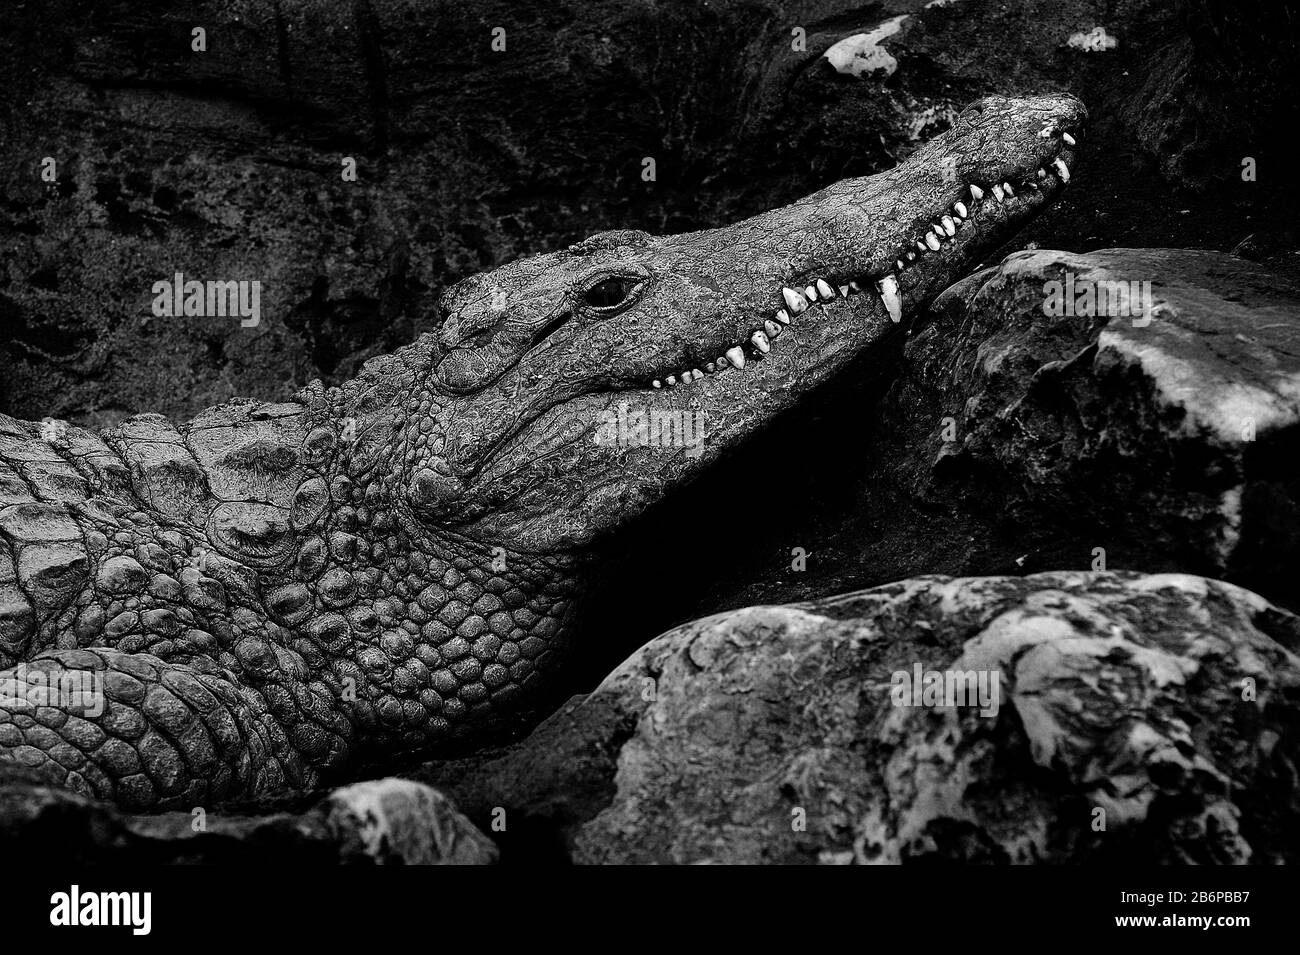 crocodile reposant près d'une rivière avec du sable rouge Banque D'Images